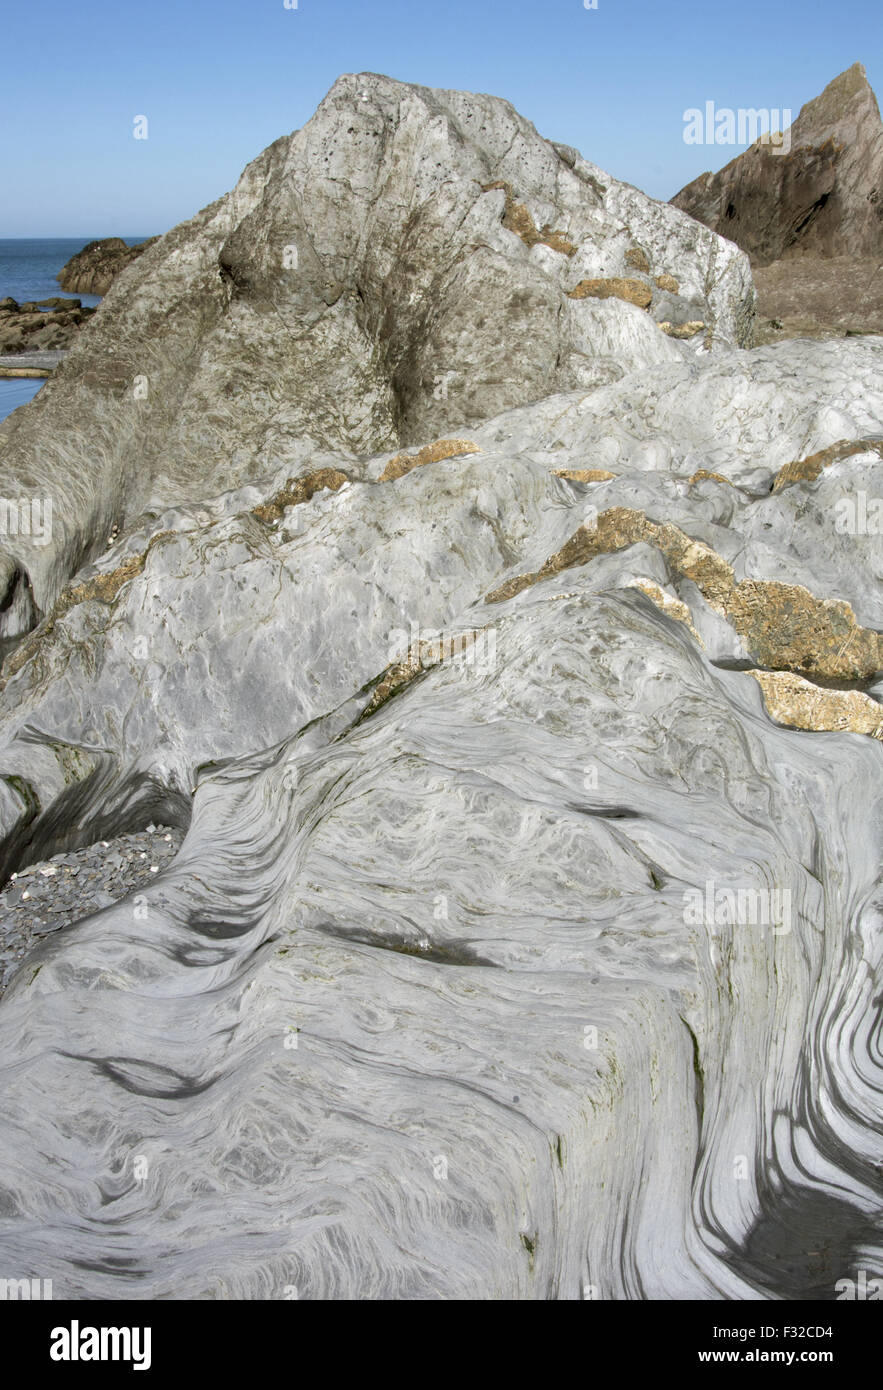 Plage rocheuse avec socle de pierre meulière, schiste et calcaire, Plage des Dames, Ilfracombe, Devon, Angleterre, juin Banque D'Images